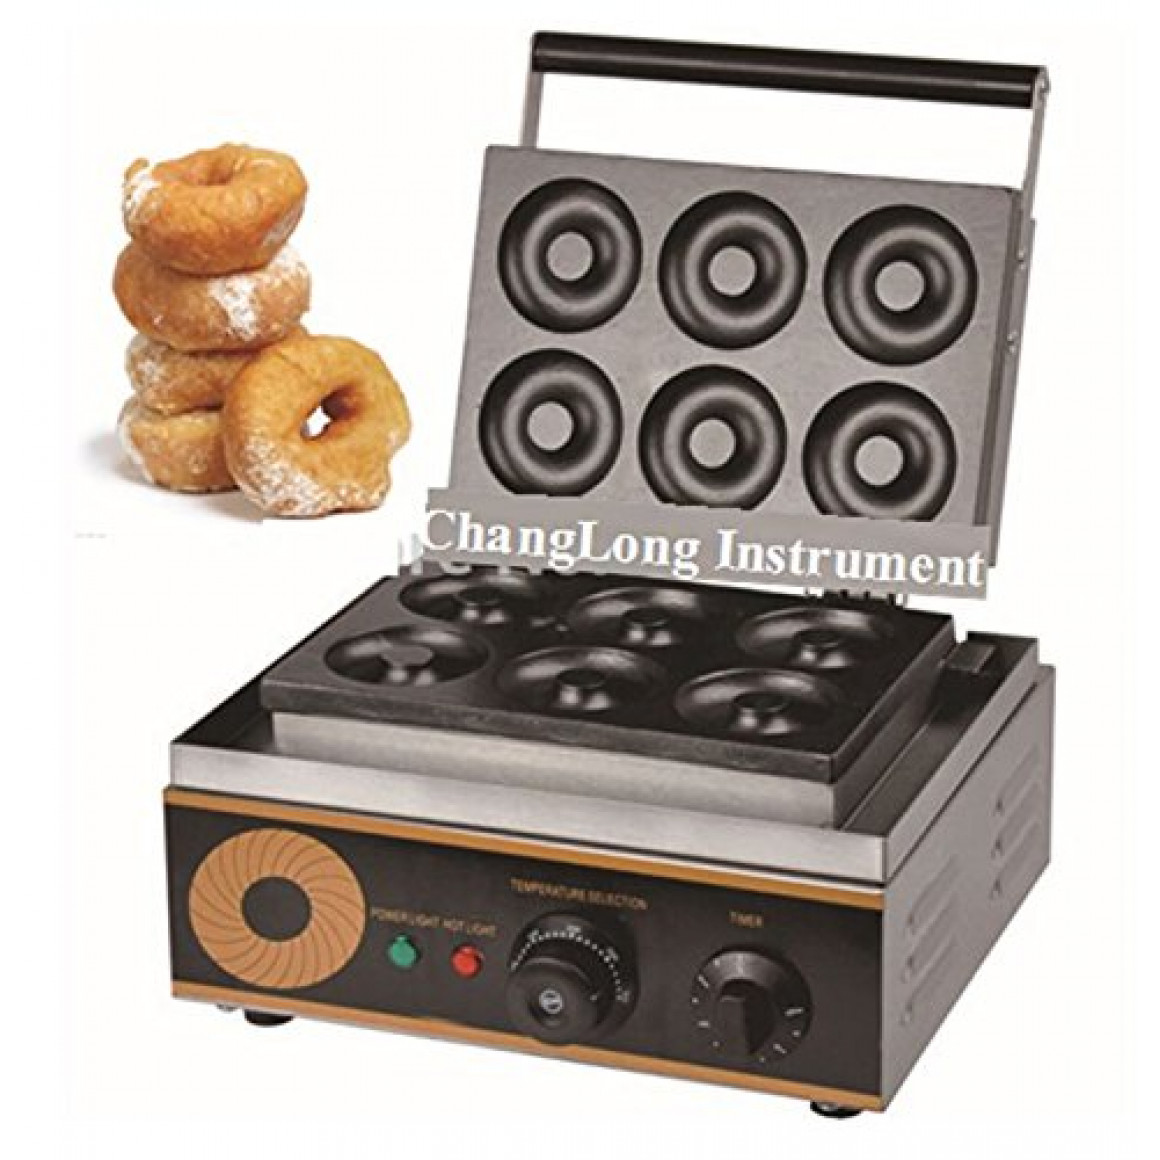 Donut machine